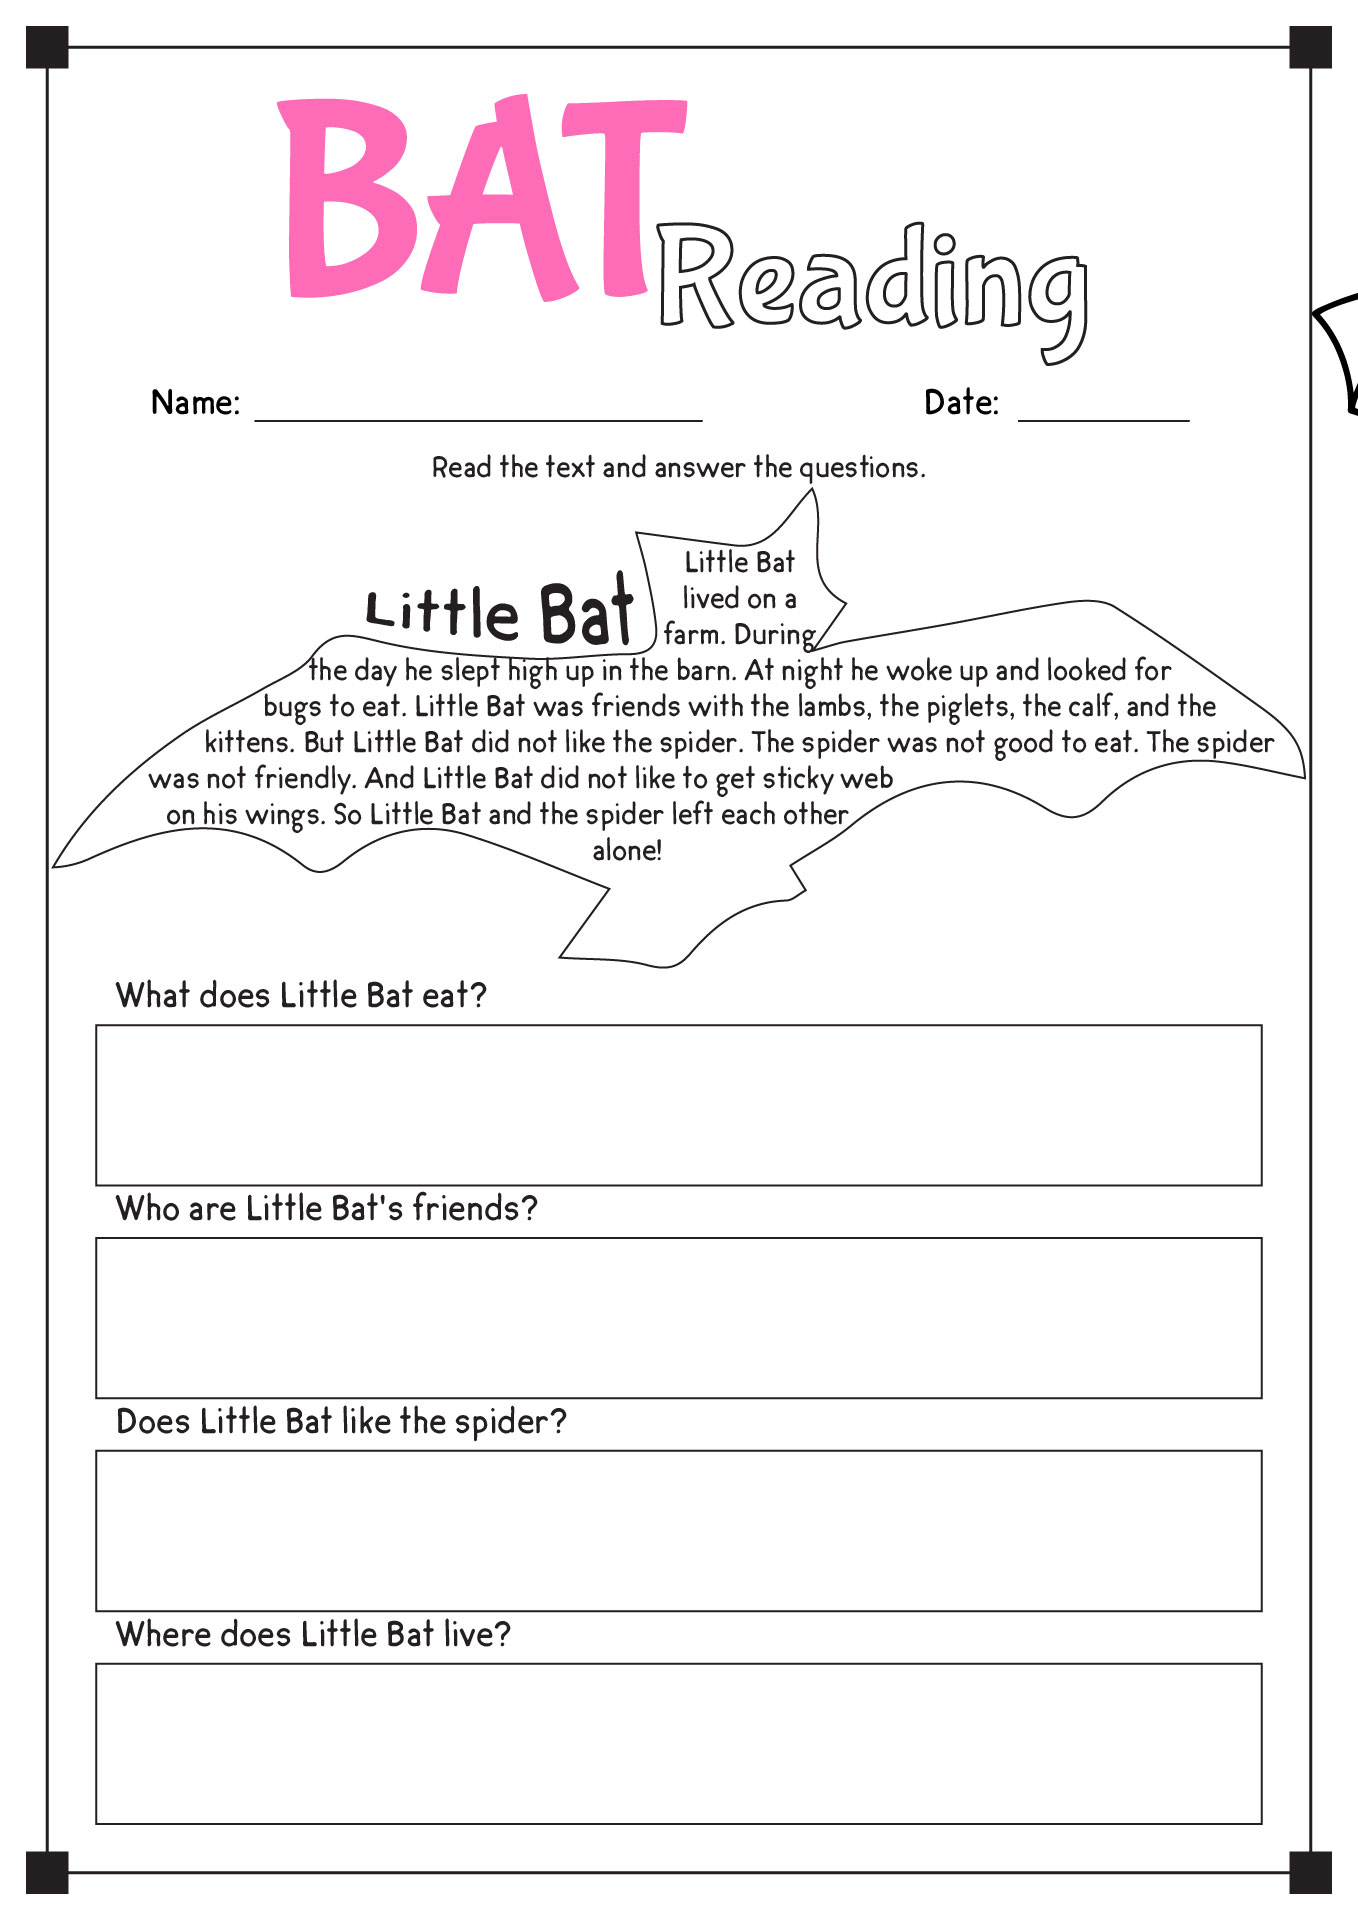 Bat Reading Comprehension Worksheets Image